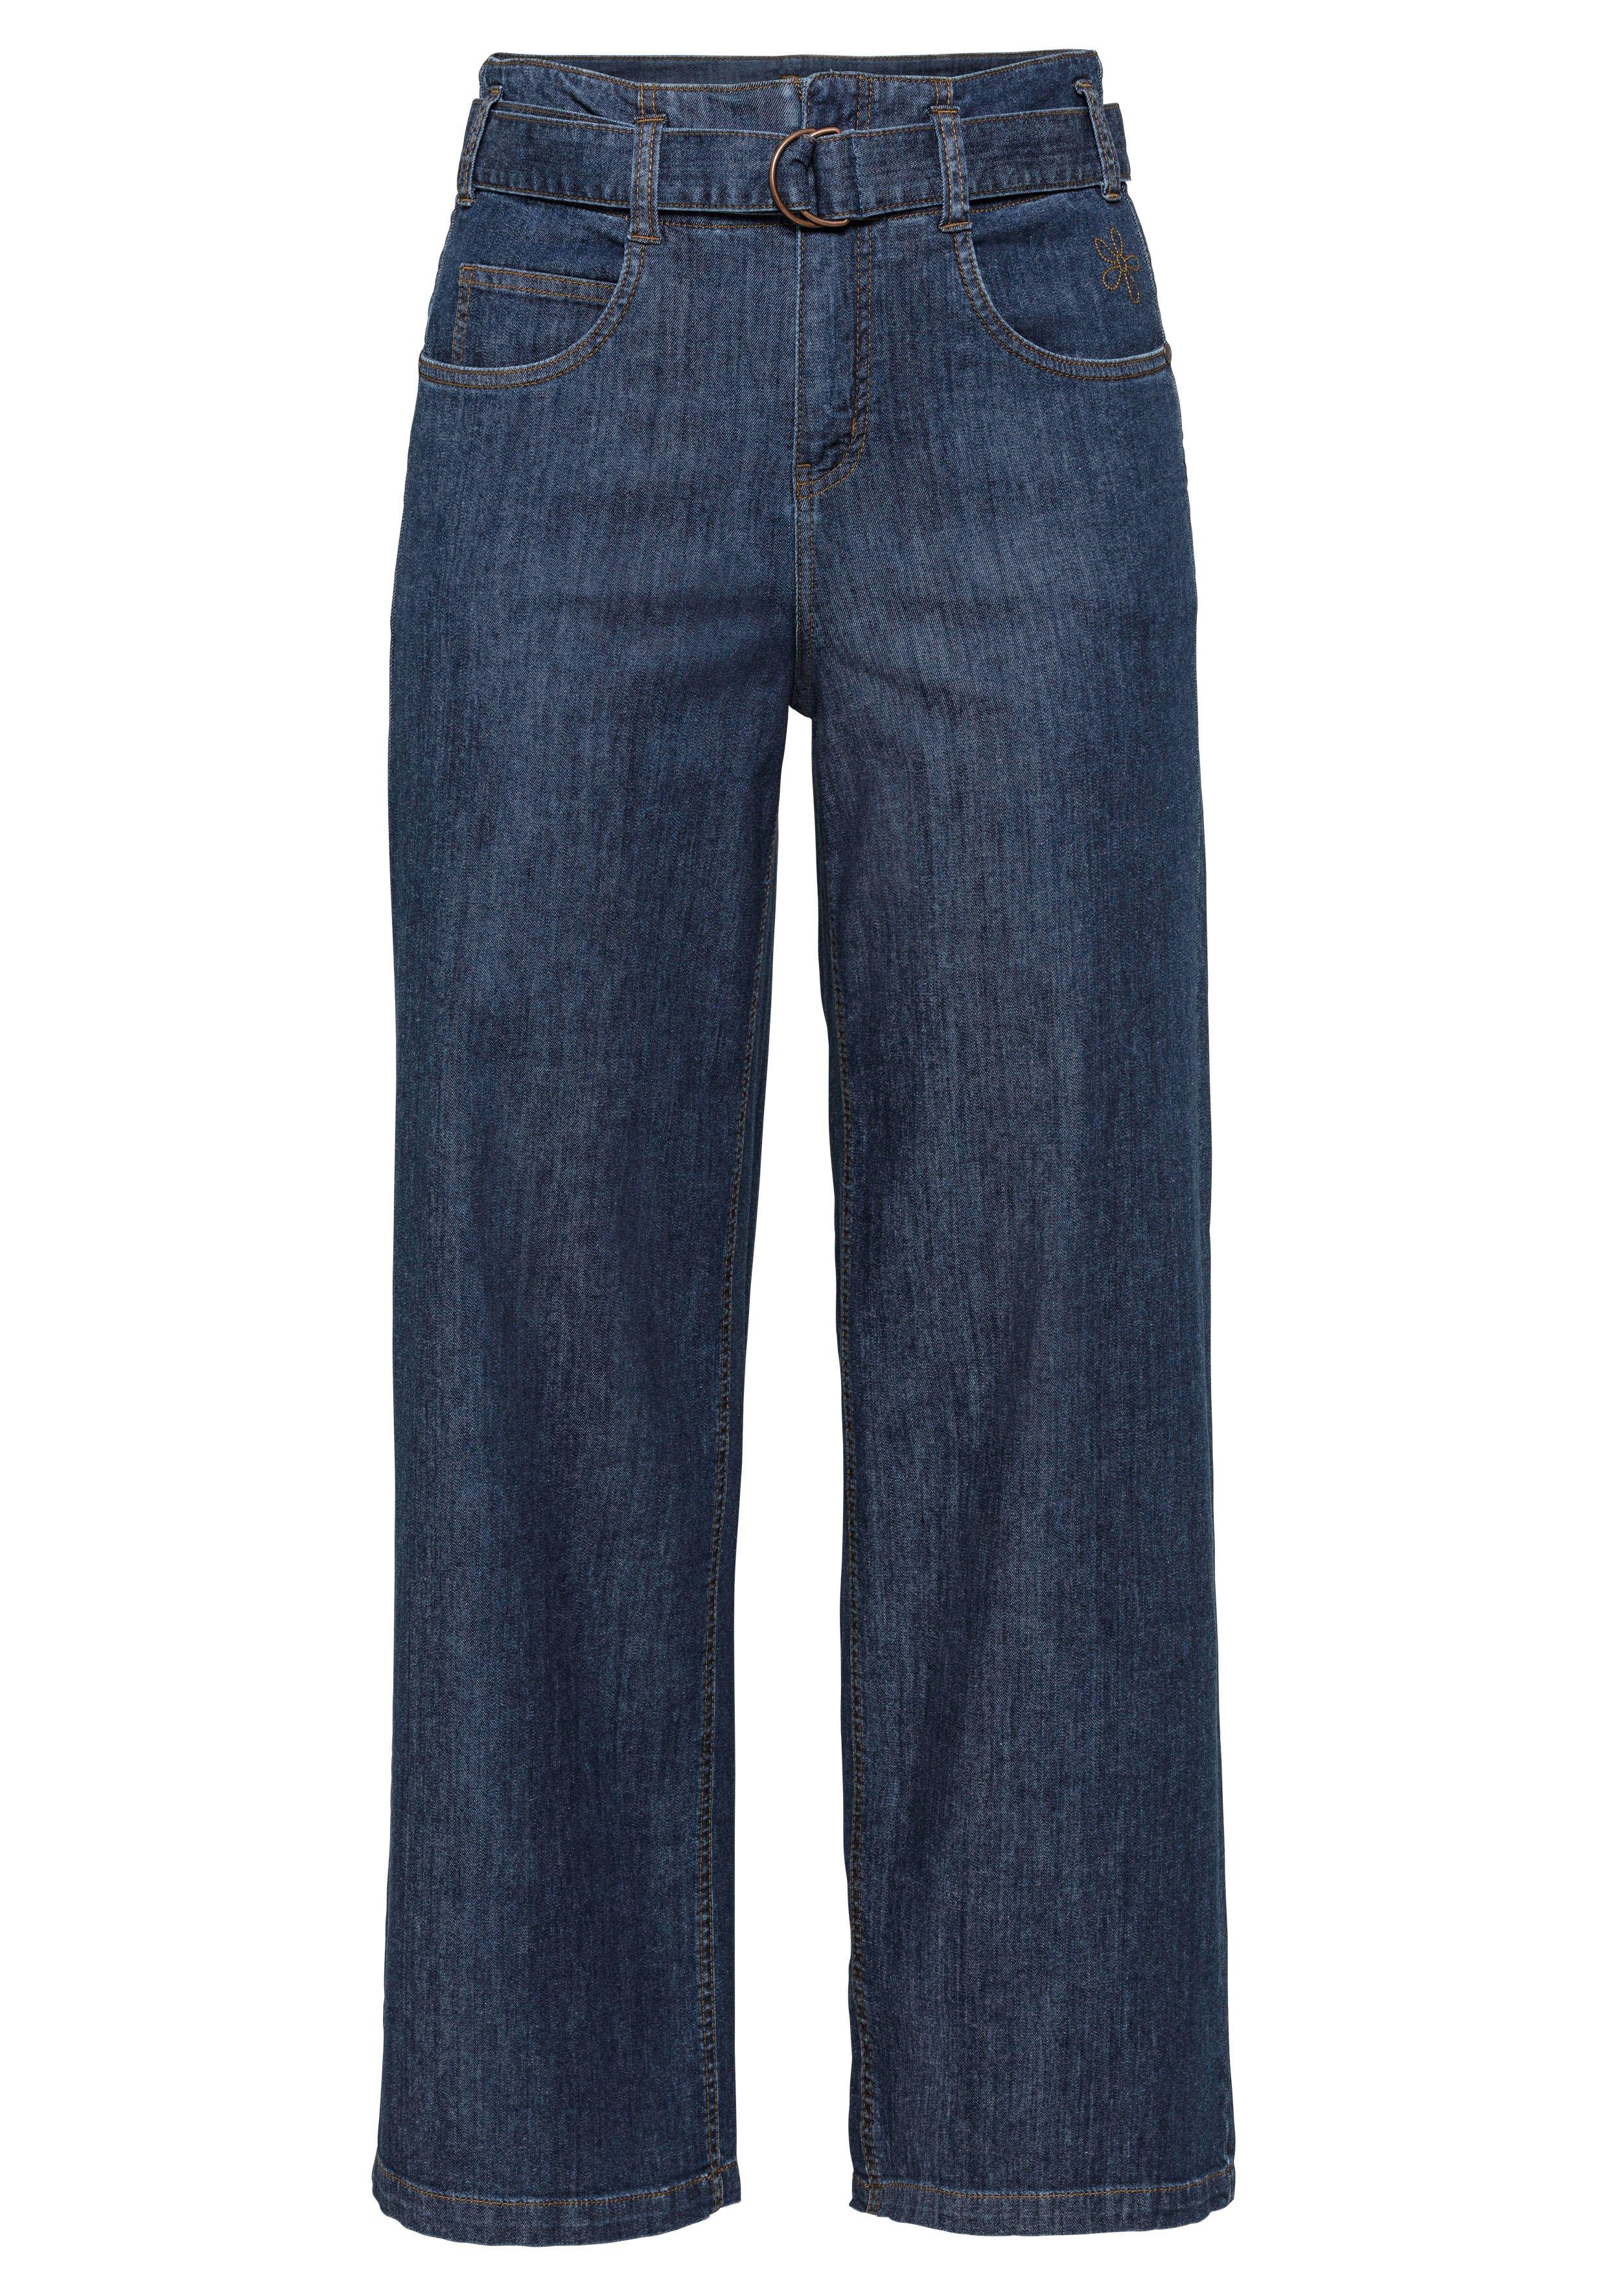 | Weite mit High-Waist-Bund - sheego blue Stretch-Jeans Denim